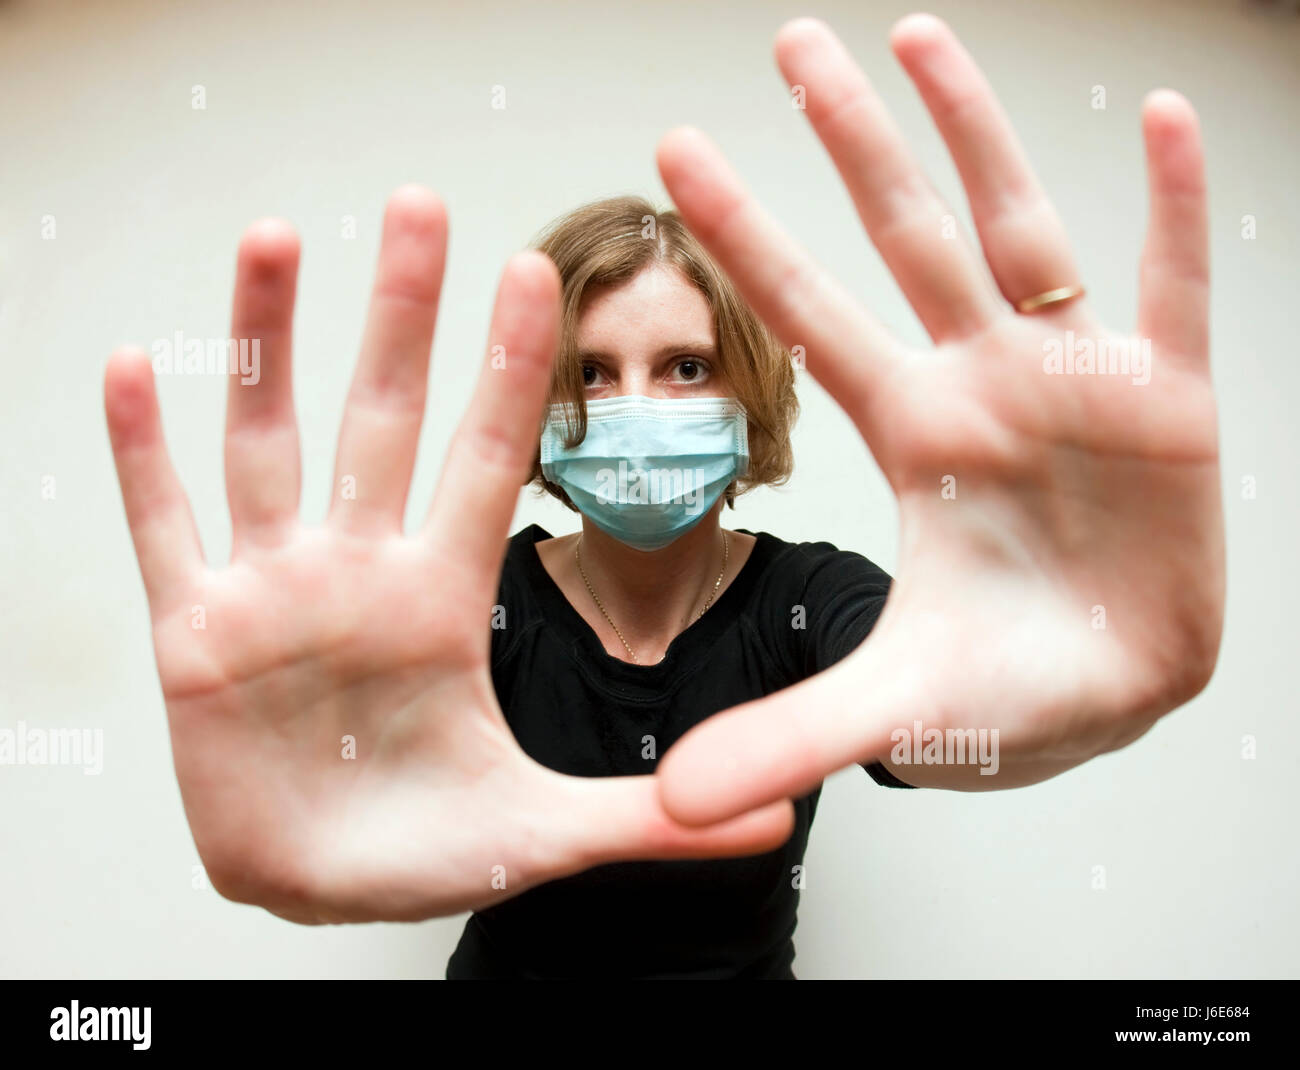 Virus de la grippe santé femme masque femme main mains médical médicinalement catarrhe froid Banque D'Images